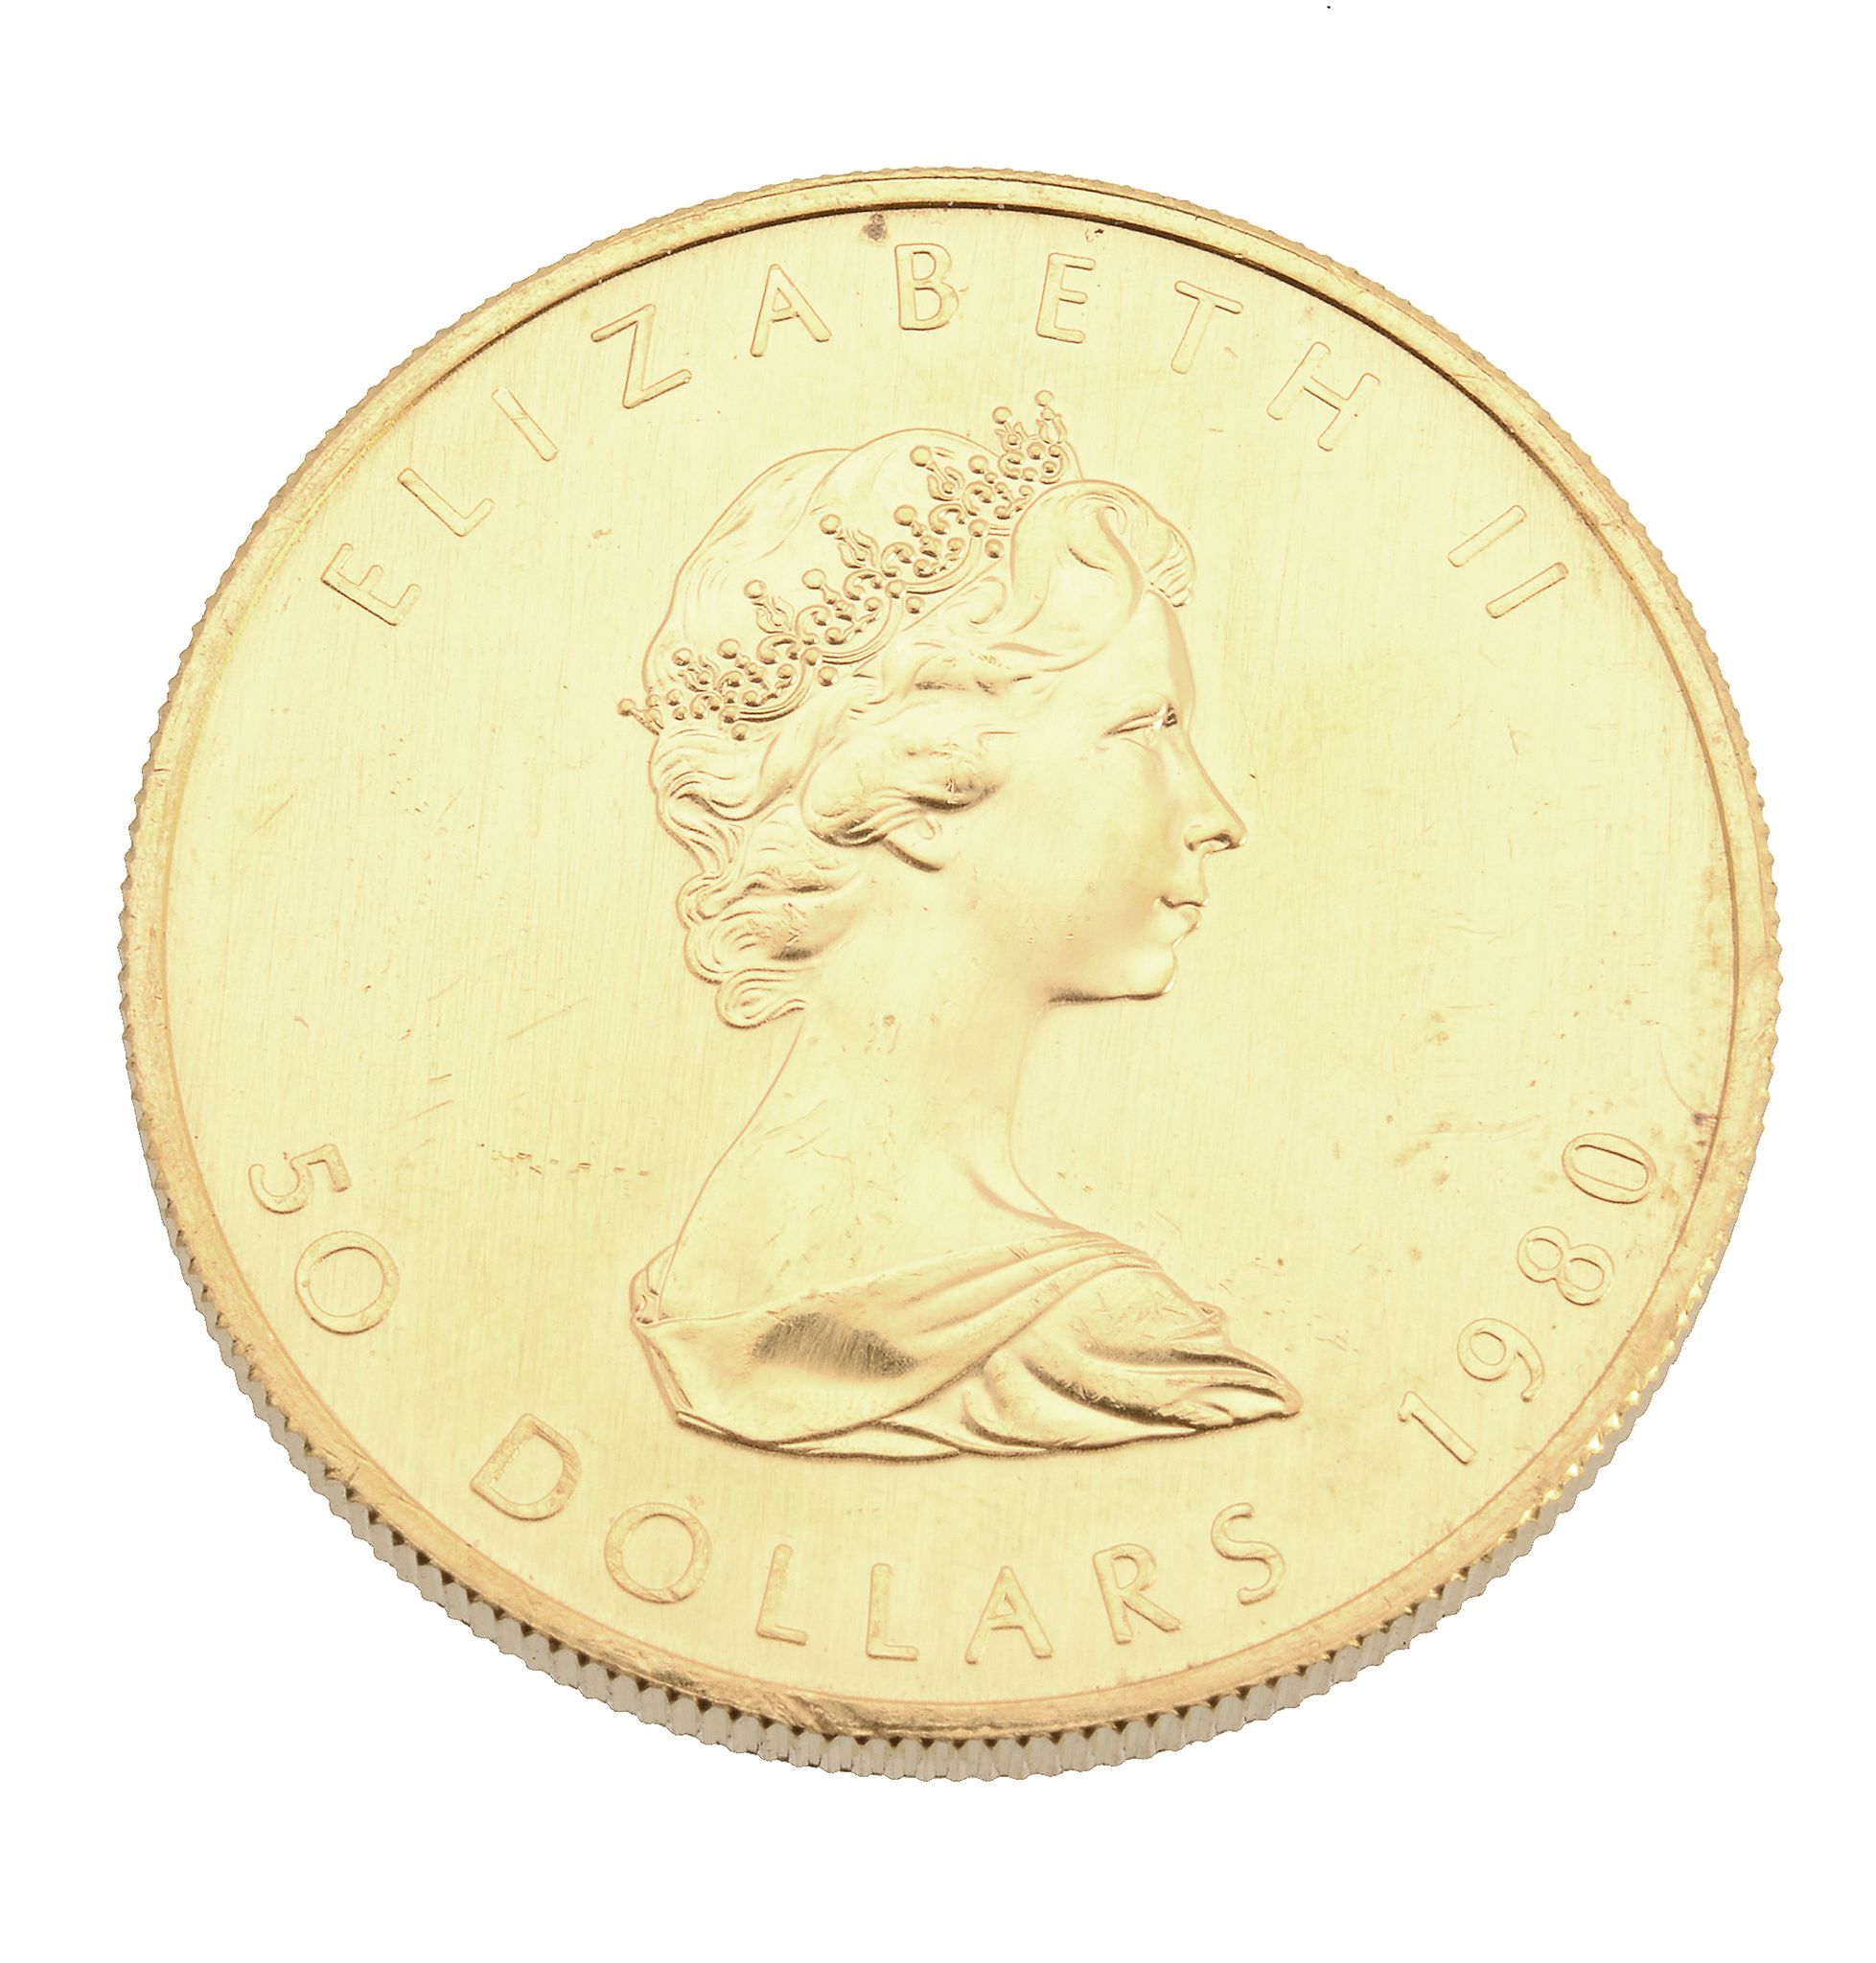 Canada, Elizabeth II, gold 50-Dollars 1980. Extremely fine